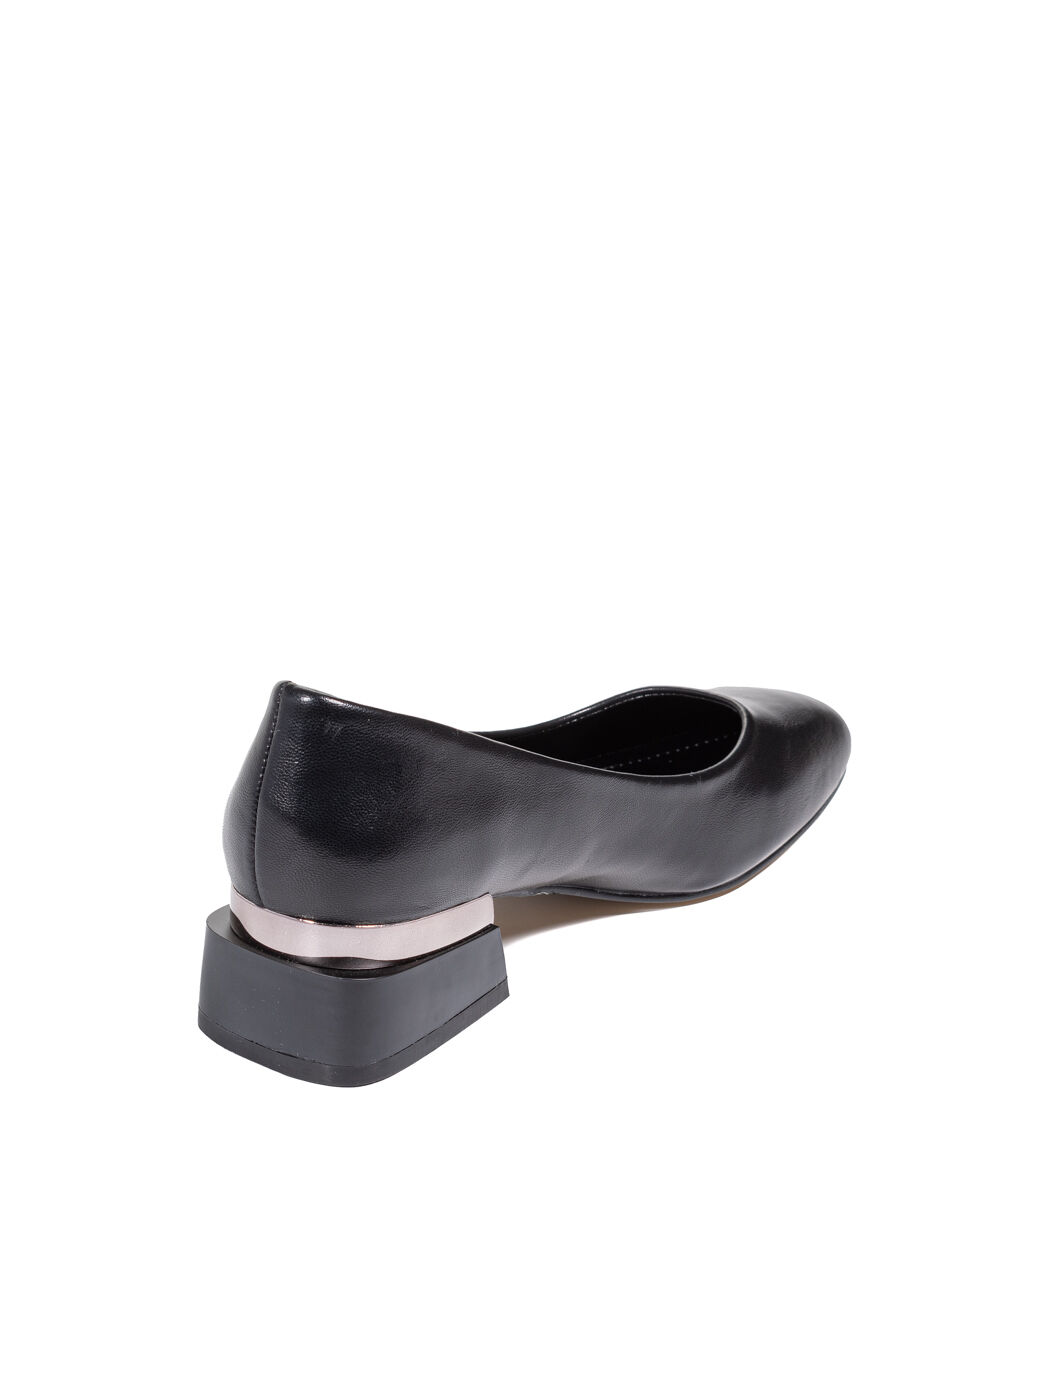 Туфли женские черные экокожа каблук устойчивый демисезон от производителя 2M вид 0